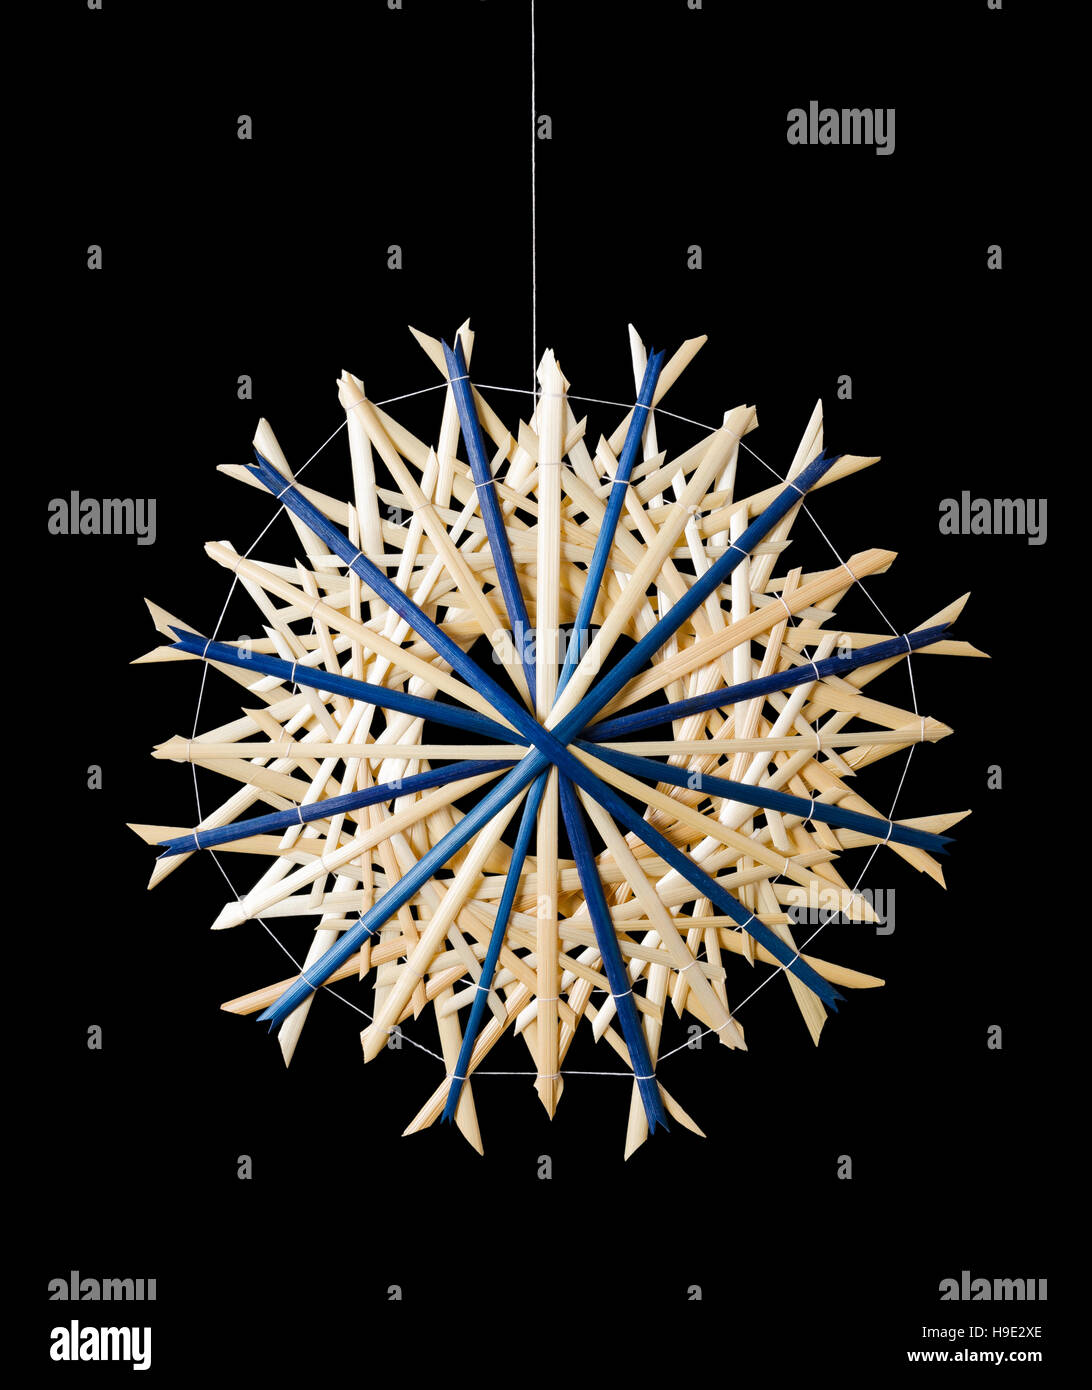 Blaue Stroh Sterne Weihnachtsdekoration auf schwarzem Hintergrund. Handgemachte Dekoration für Fenster, als Geschenk oder an den Weihnachtsbaum hängen. Stockfoto